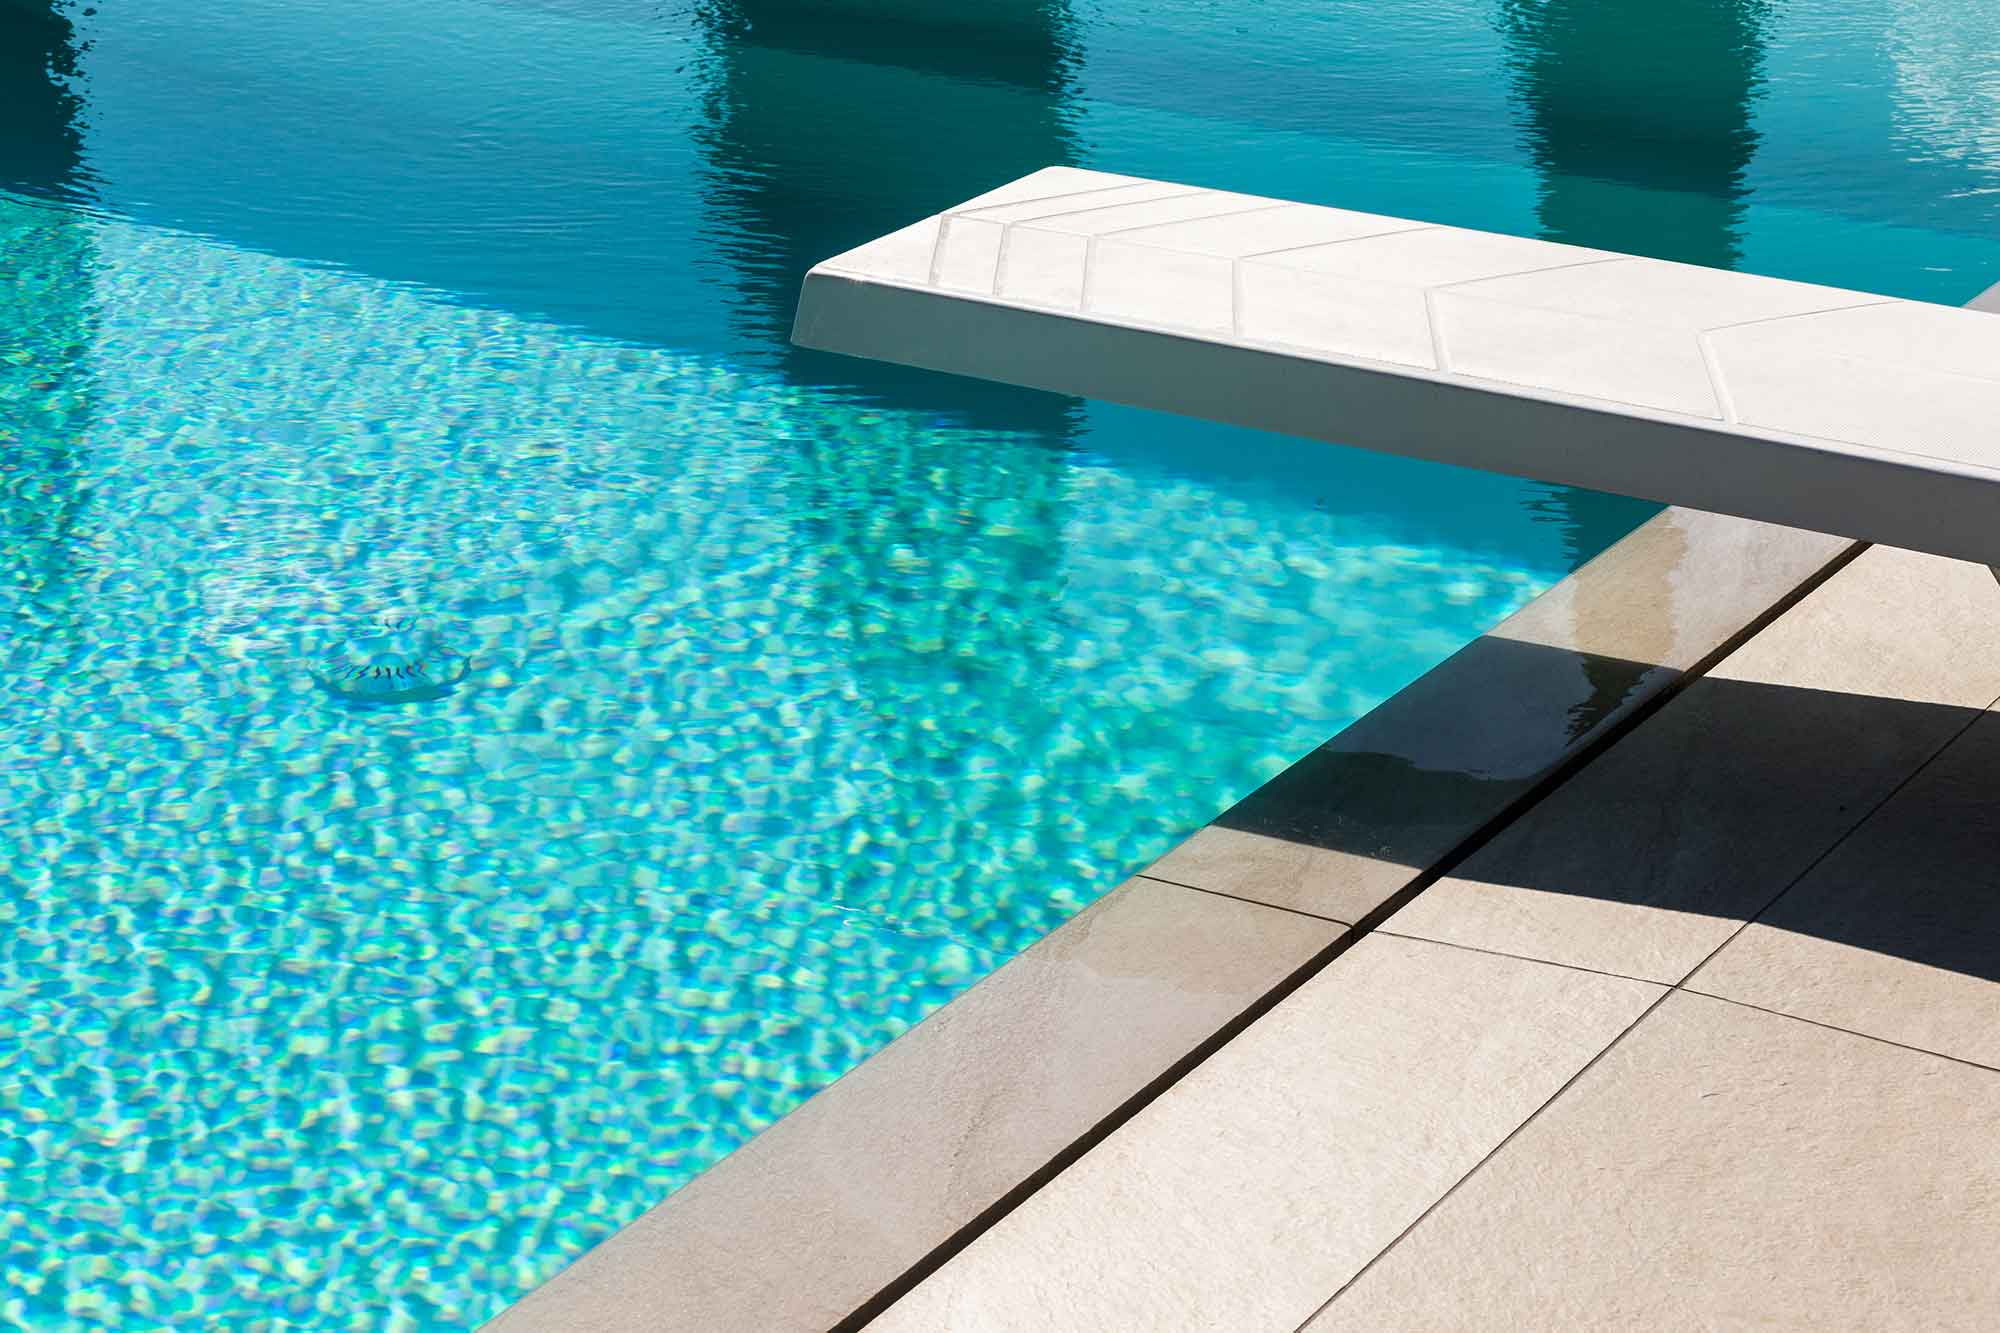 piscina brescia lago di garda dettaglio studio architettura interior design brescia banp studio